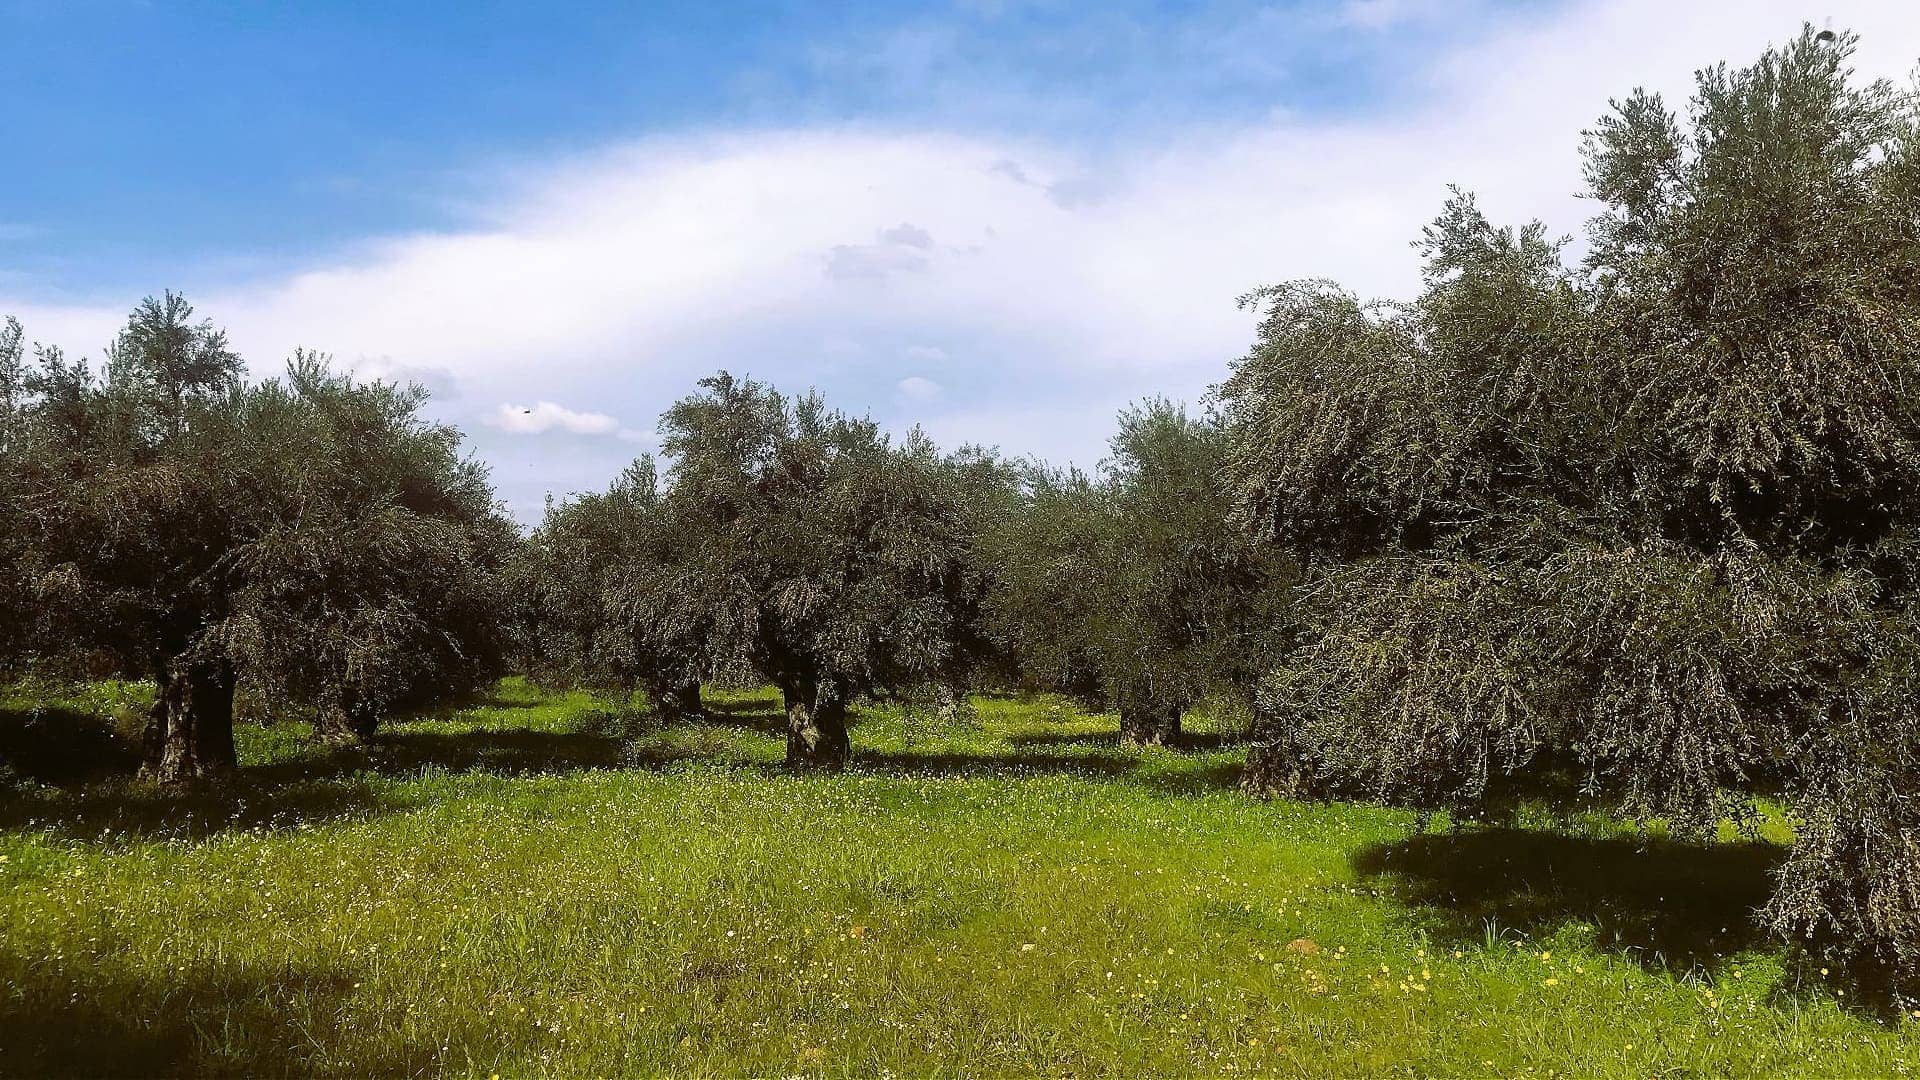 europa-profile-die-beste-olivenölproduktion-preisgekrönter-griechischer-produzent-schaut-ost-olivenöl-zeiten